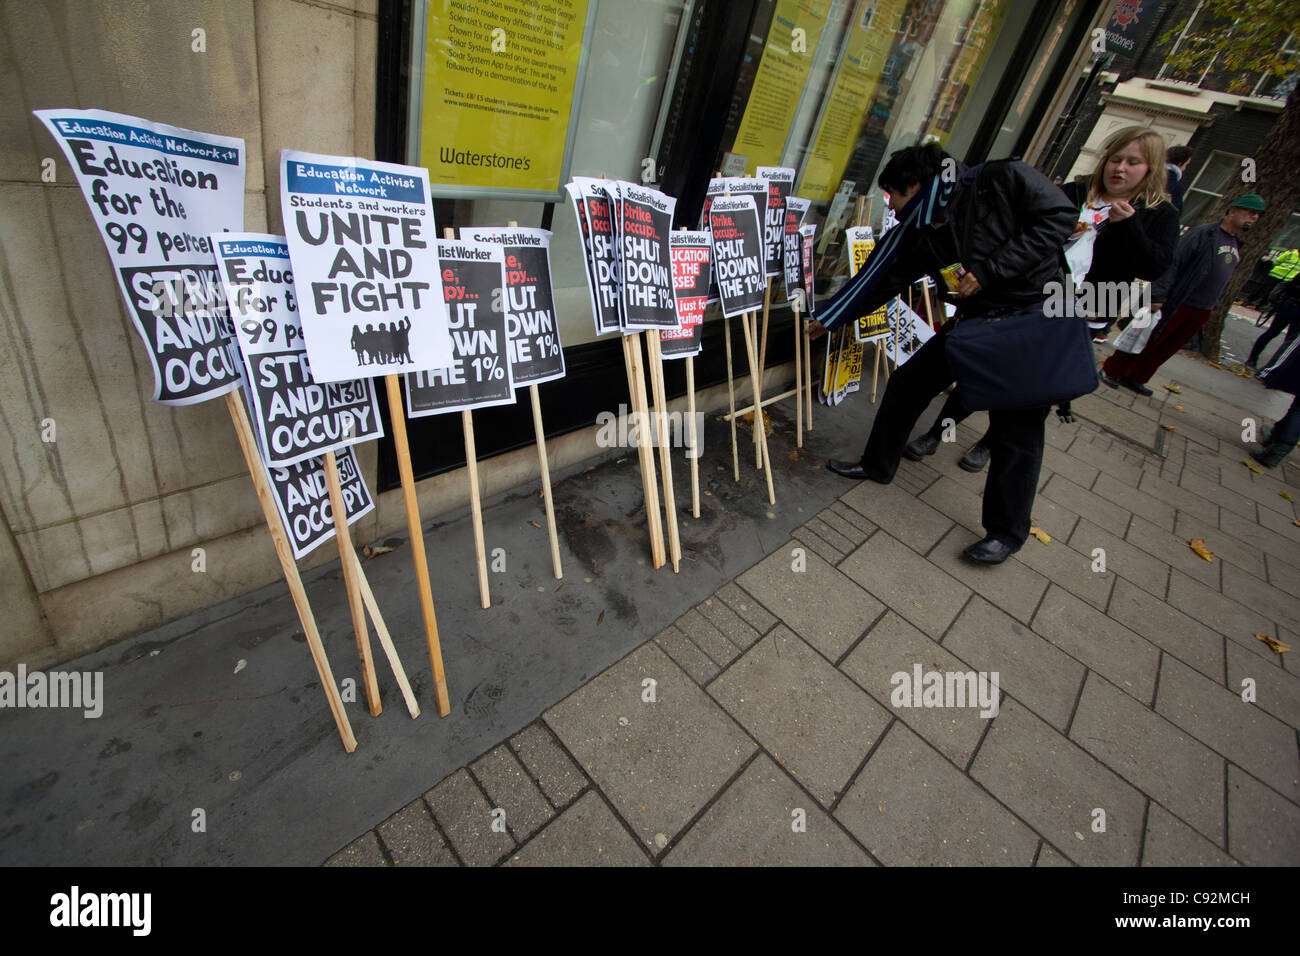 Los manifestantes tener carteles, durante la protesta de los estudiantes en el centro de Londres, Reino Unido, acerca de los recortes en el gasto público y aumentar las matrículas Foto de stock